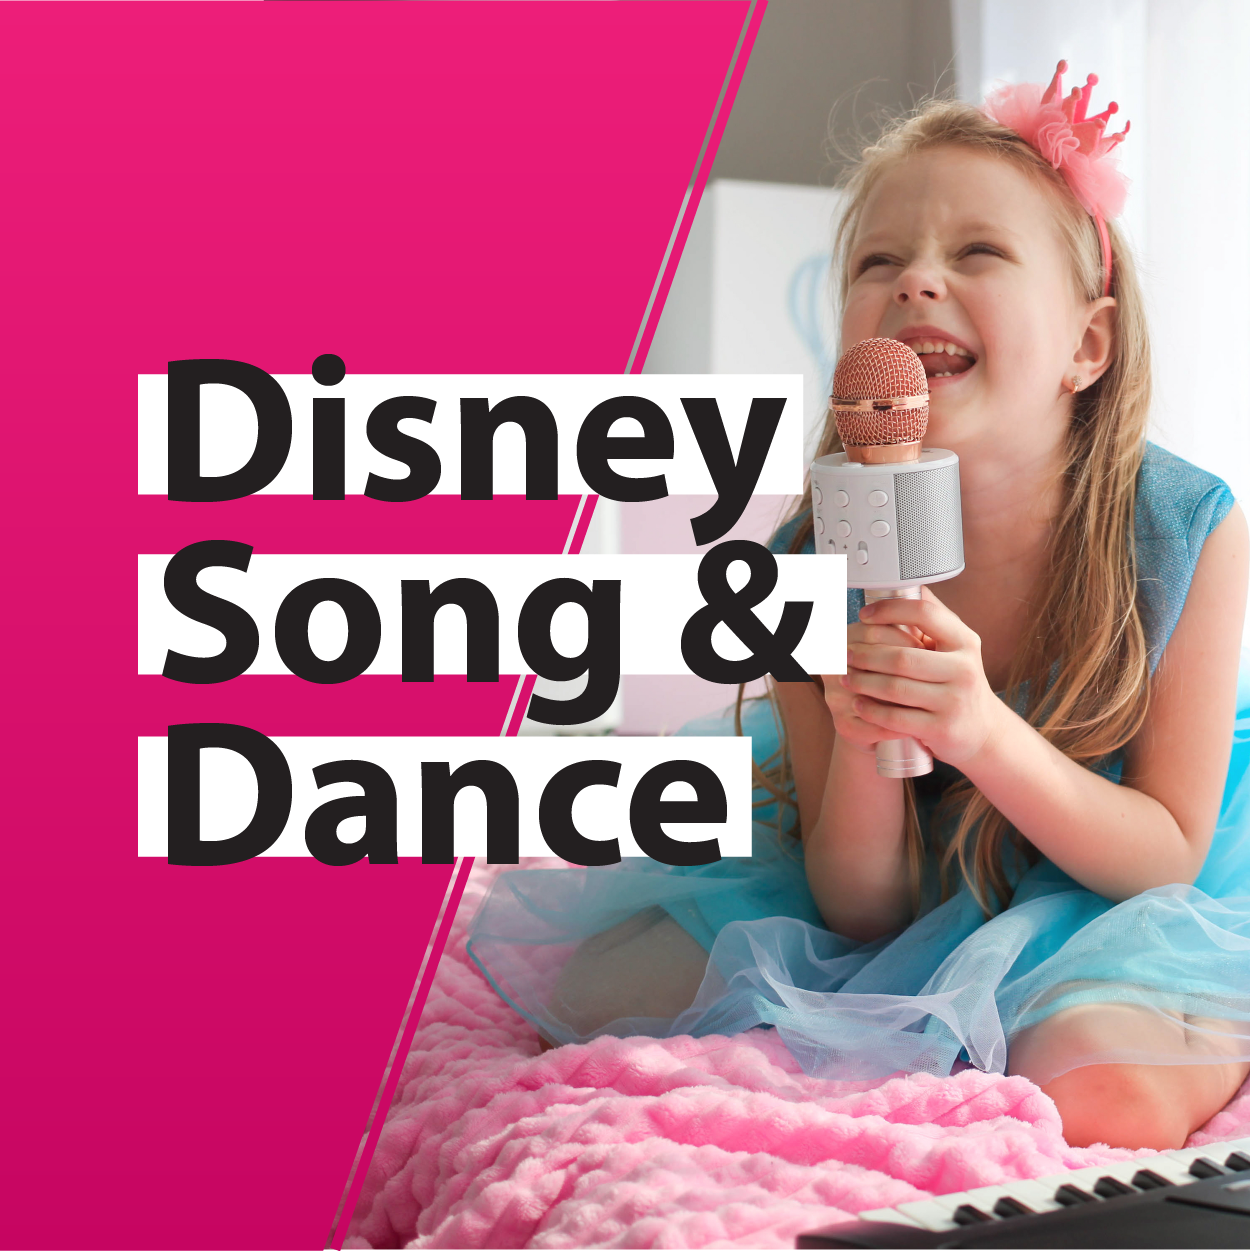 Disney Song & Dance